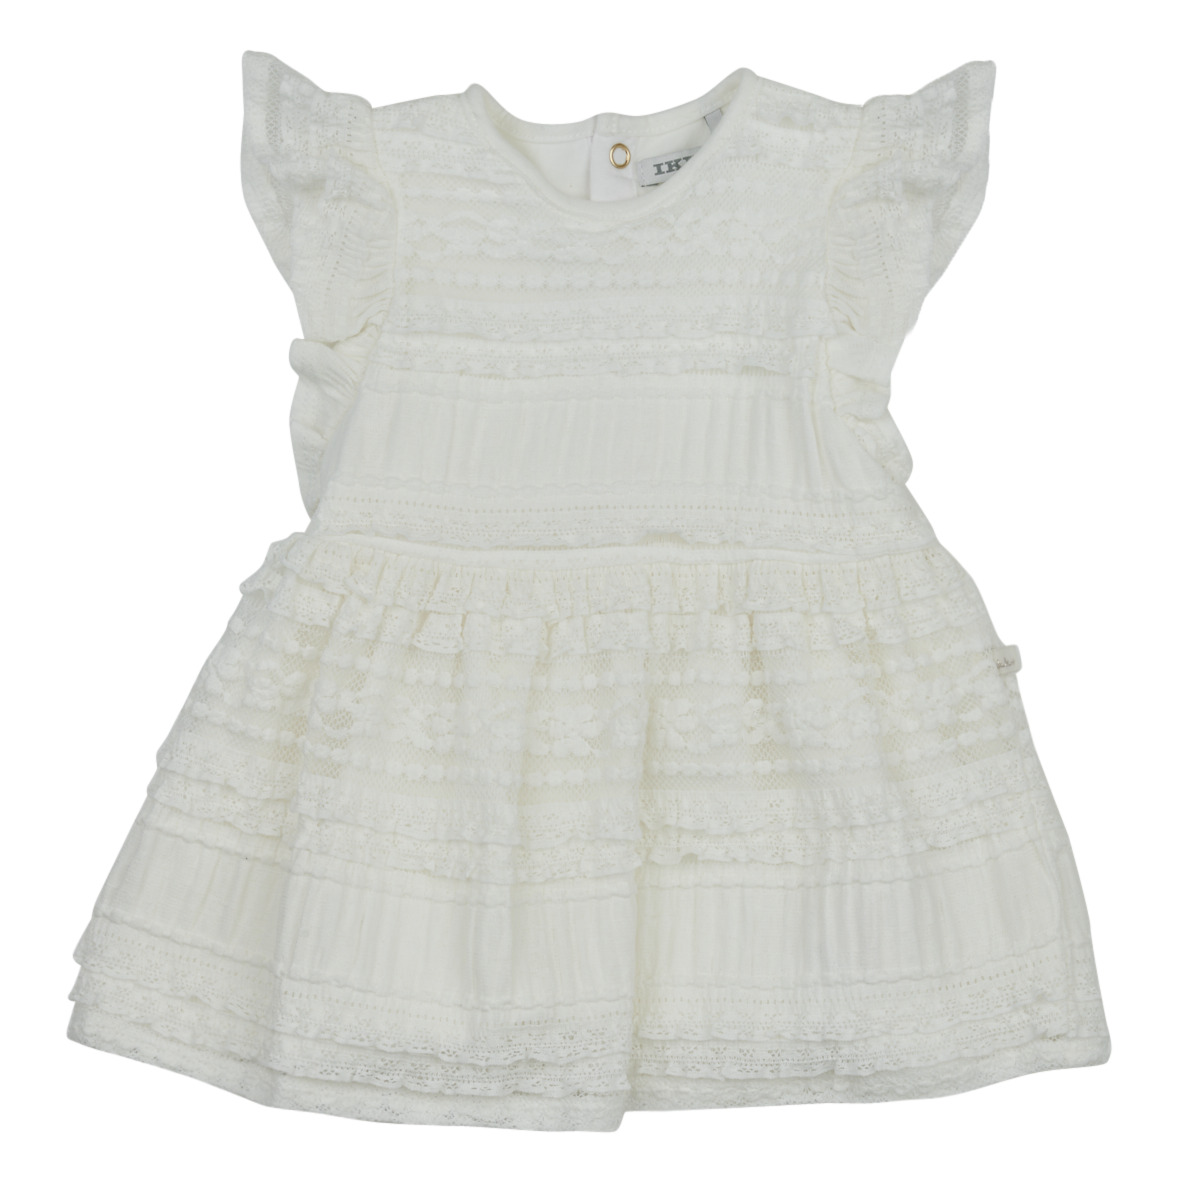 Clothing Girl Short Dresses Ikks XW30120 White